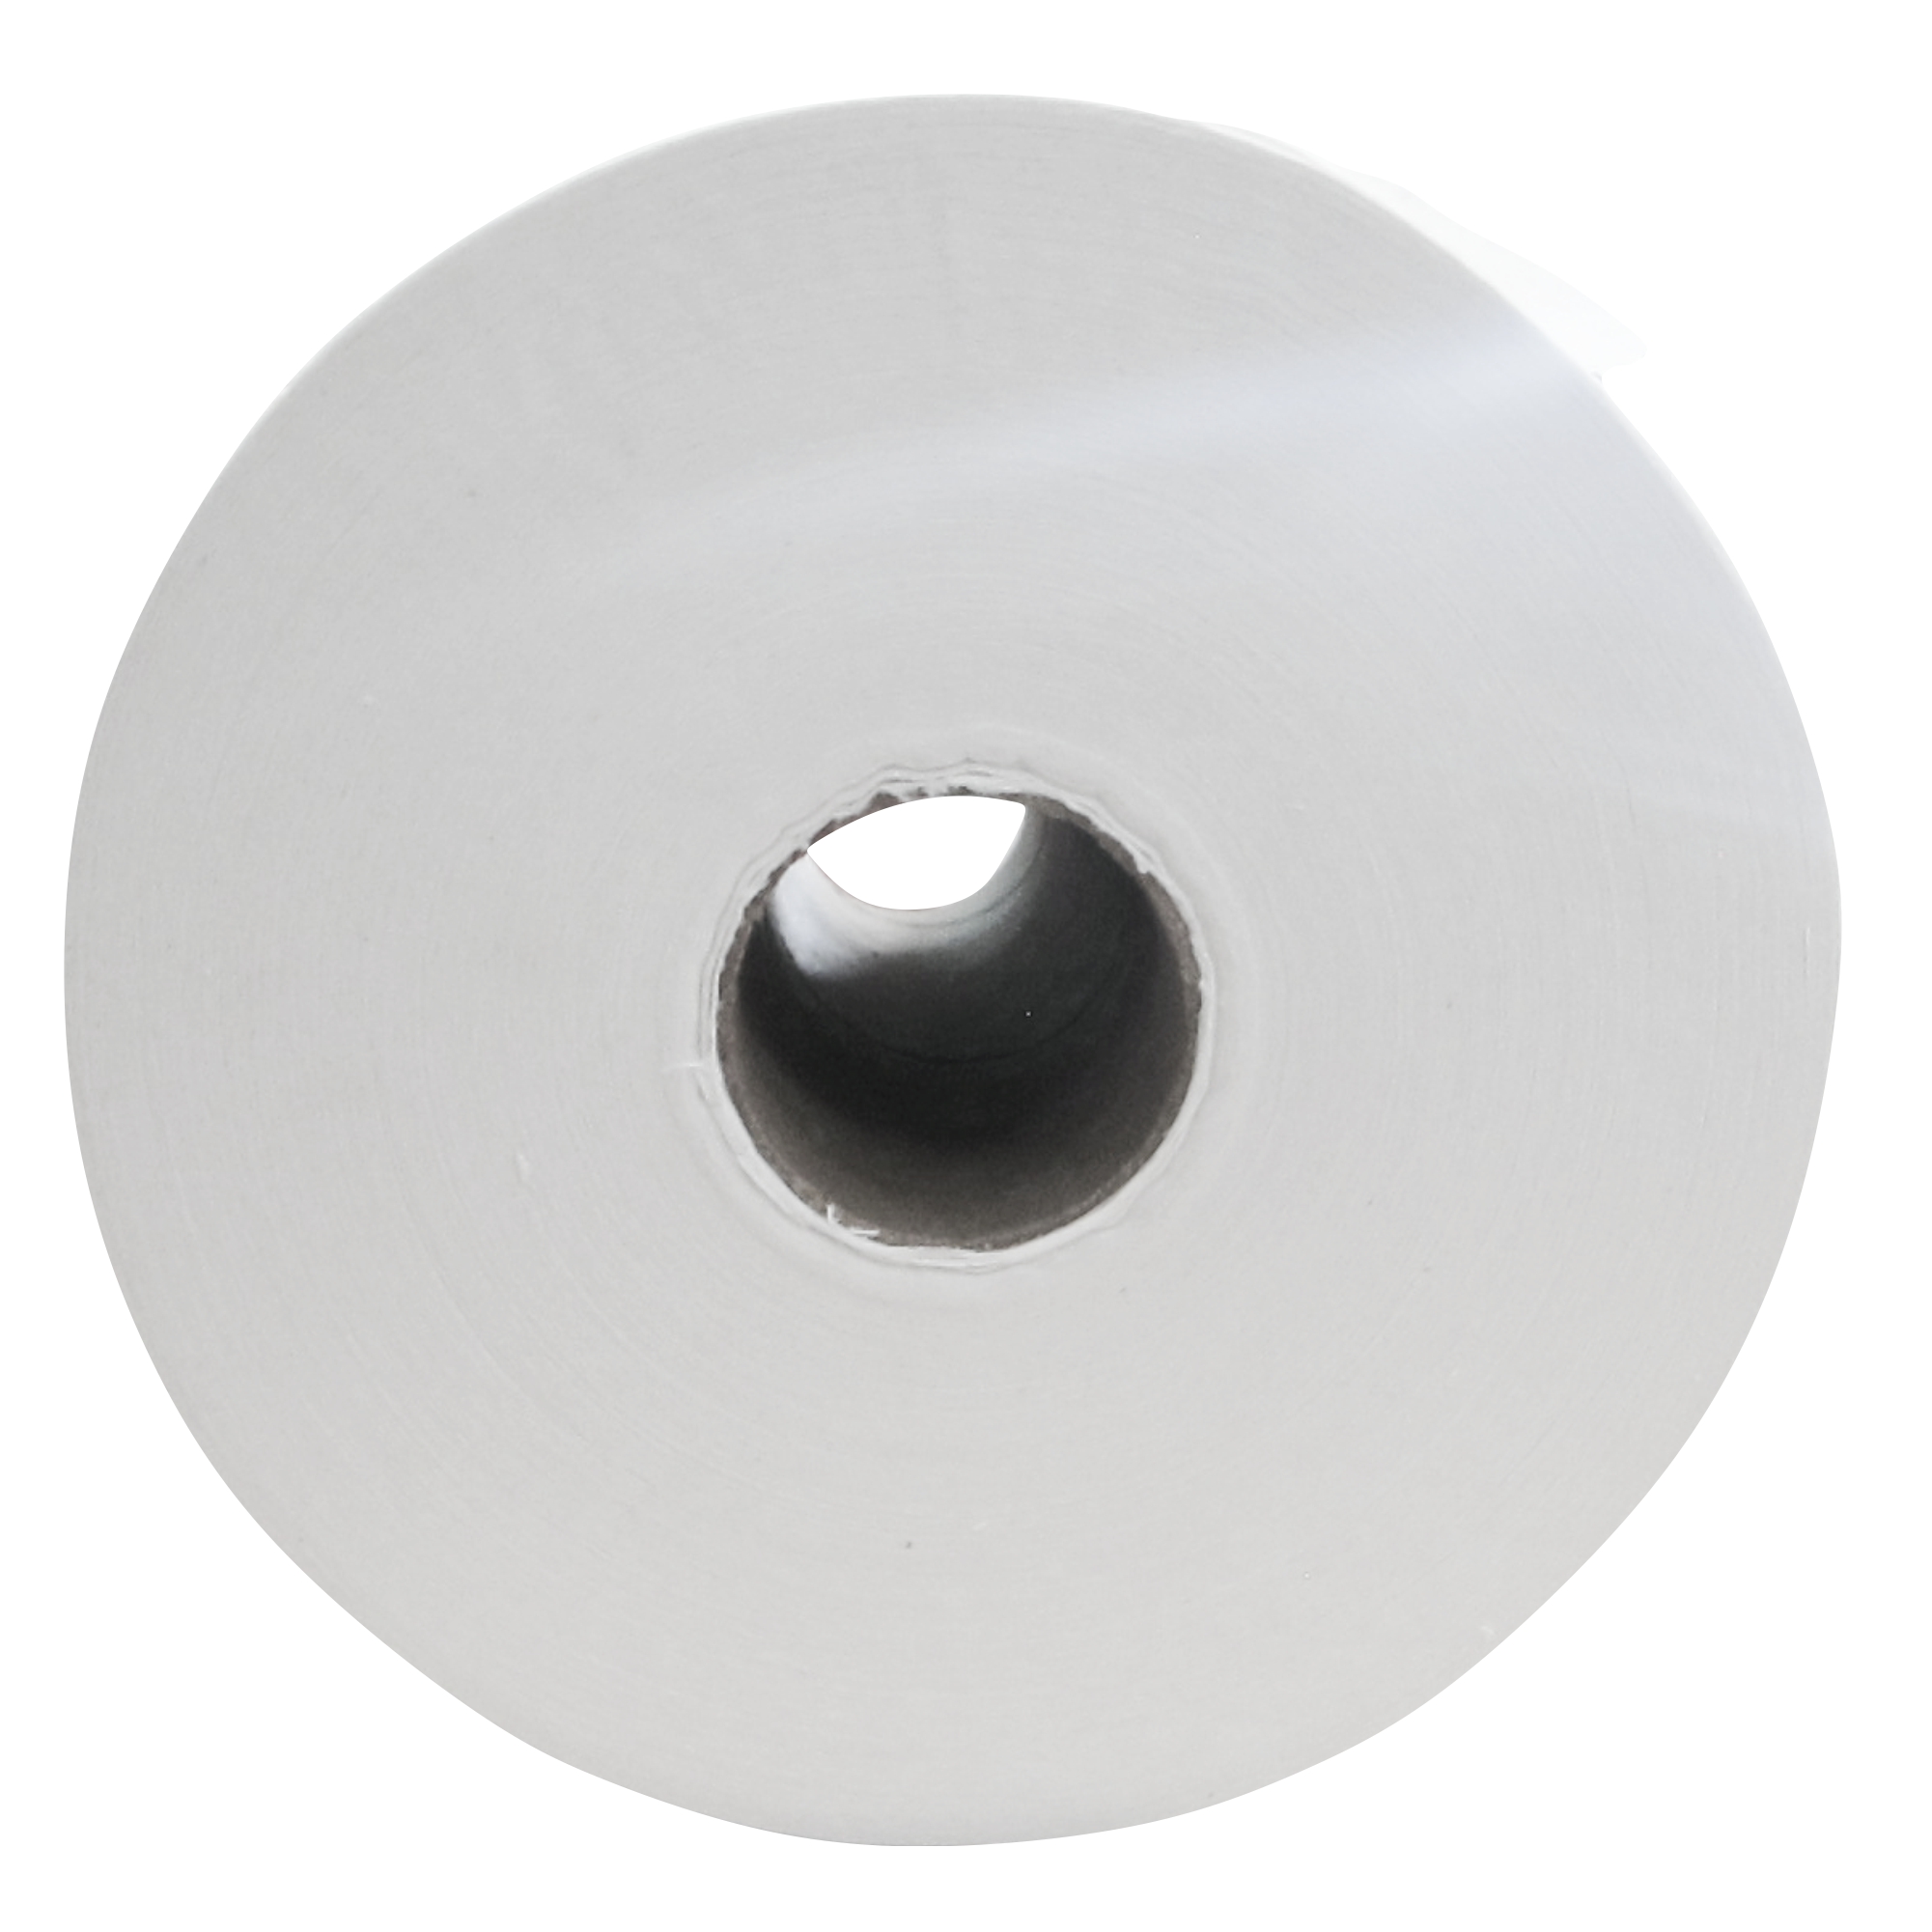 Greymoon 200-60 sistema AD-200 toalla en rollo color blanca hoja sencilla auto-corte, caja con 8 rollos de 200 mts cada uno